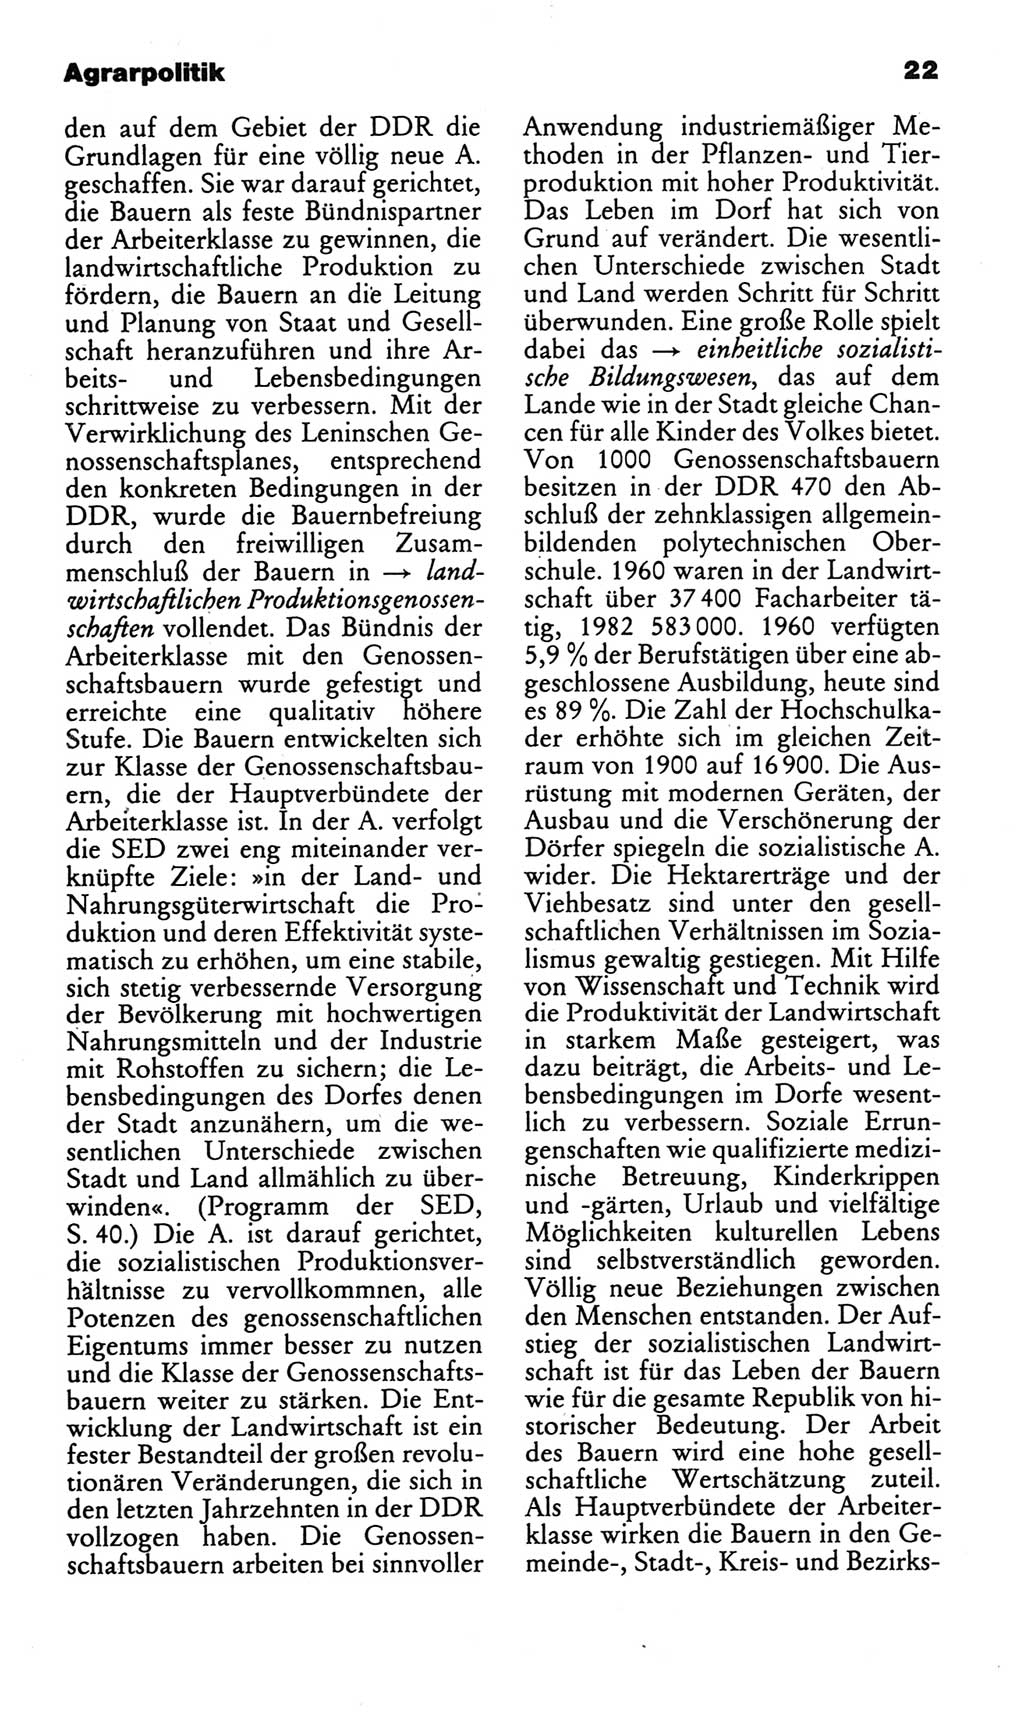 Kleines politisches Wörterbuch [Deutsche Demokratische Republik (DDR)] 1986, Seite 22 (Kl. pol. Wb. DDR 1986, S. 22)